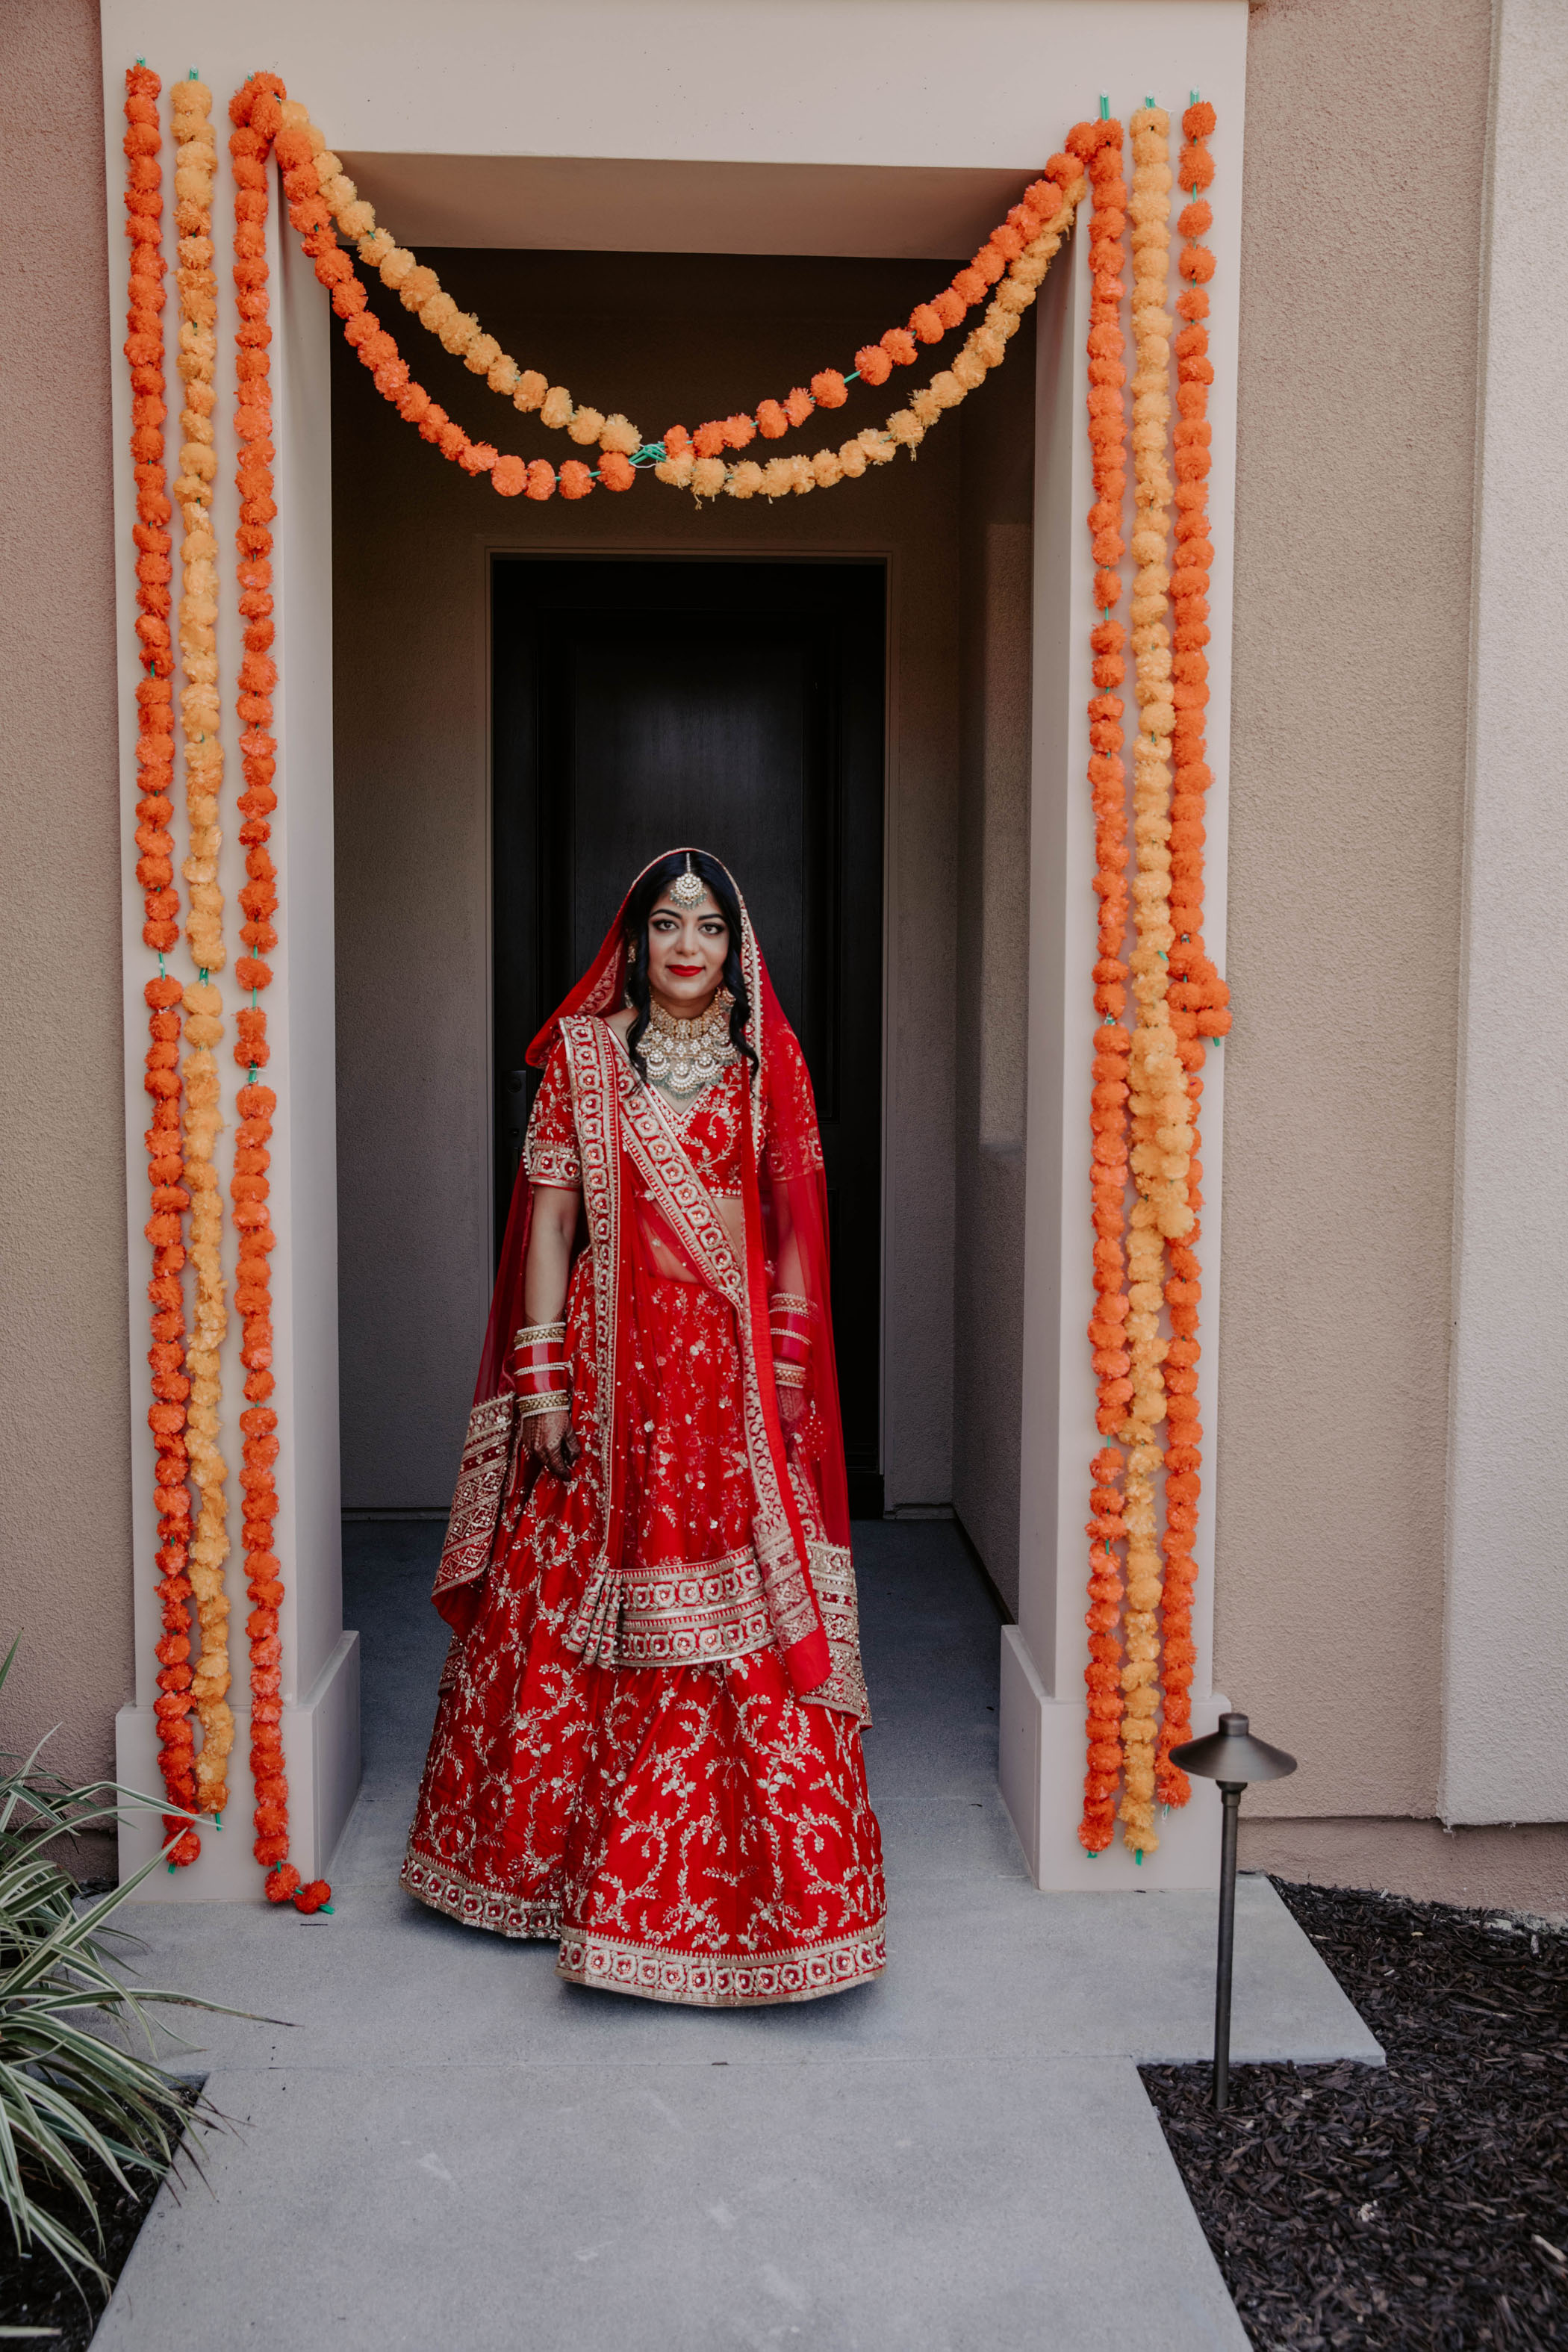 Boho Glam Inspired Indian Wedding Bride